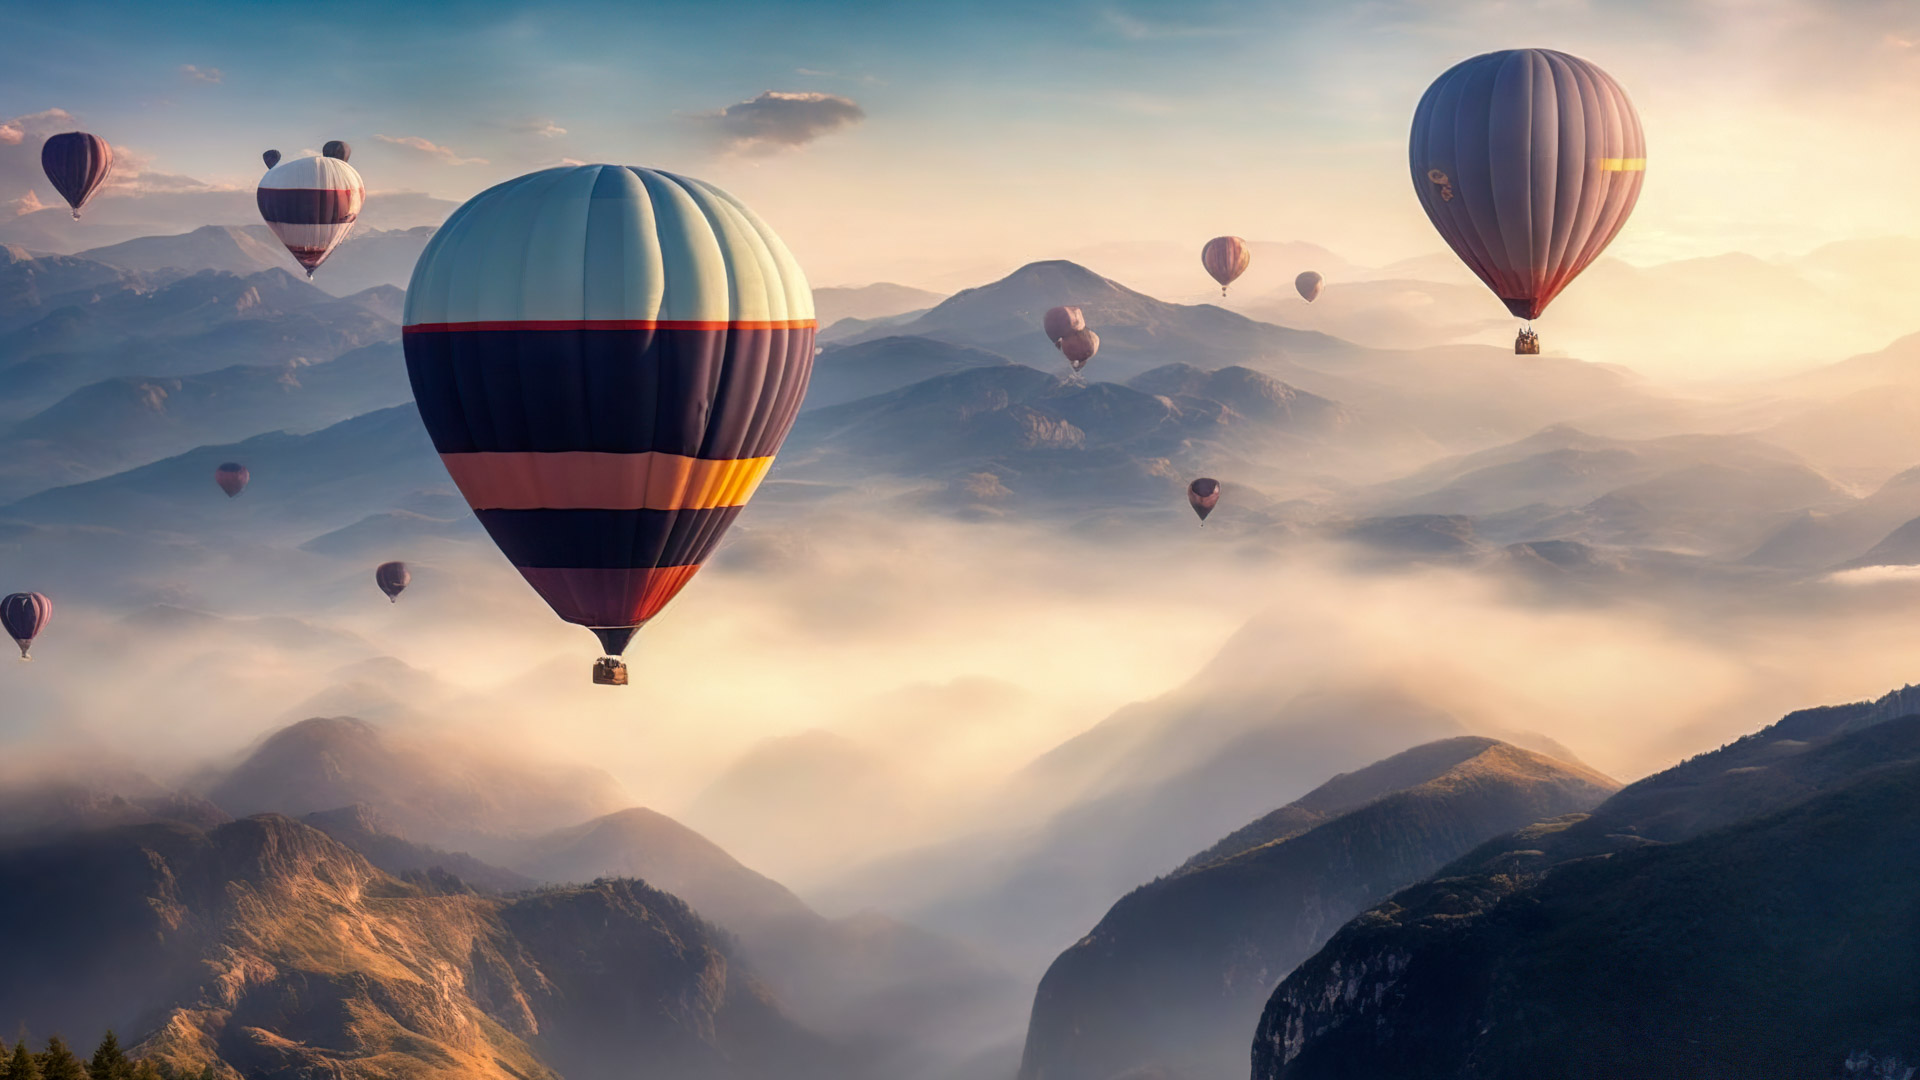 Vivez le surréalisme avec notre fond d'écran de paysage de montagne, présentant un ciel rempli de montgolfières flottant paisiblement au-dessus d'un paysage montagneux brumeux.